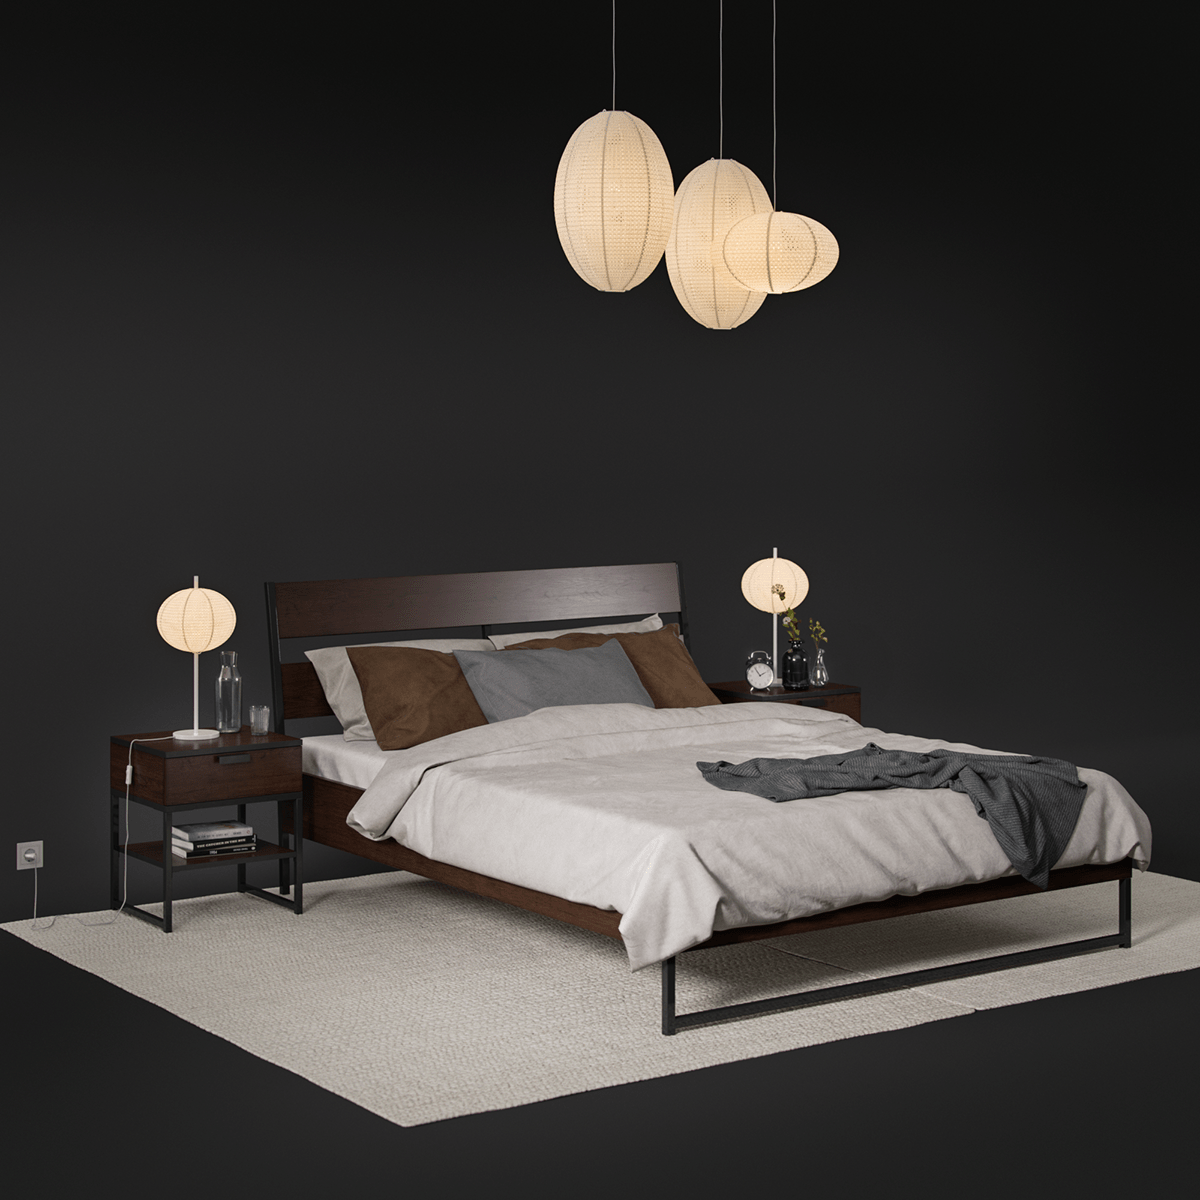 3D Ikea Bed Model 190 Free Download By Oleg Rasshchepkin